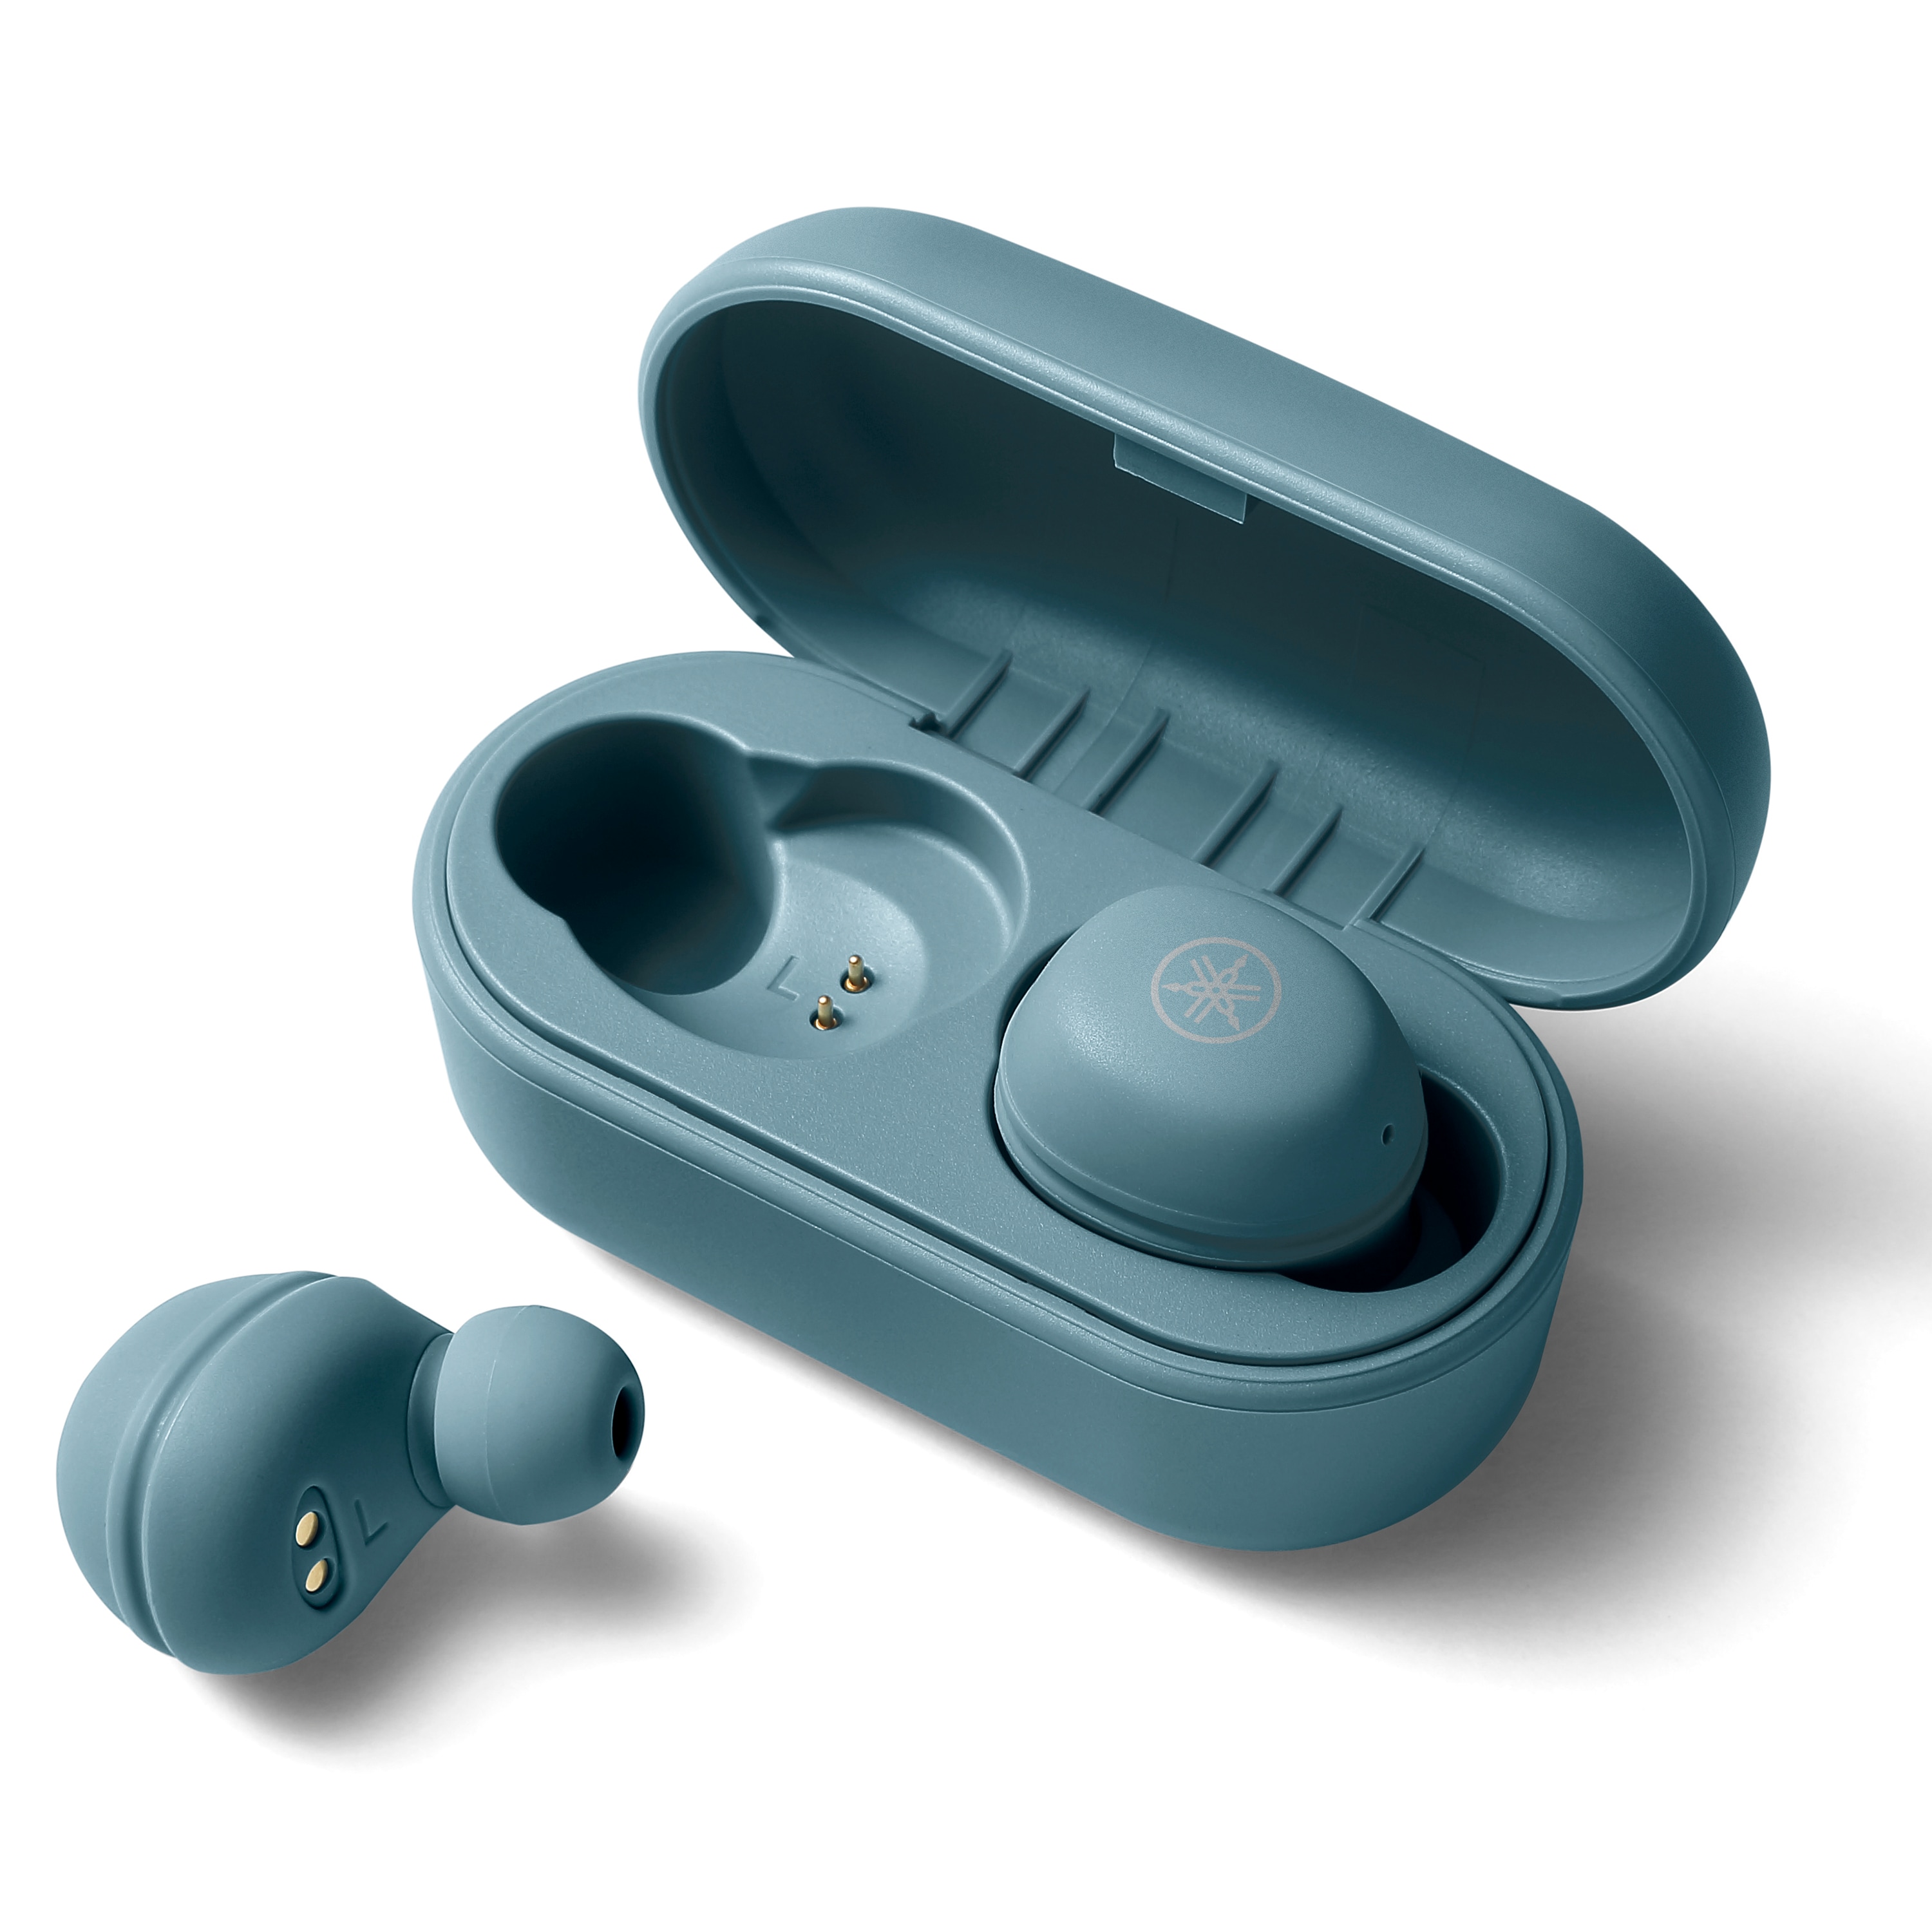 Cách sử dụng tai nghe không dây bluetooth đảm bảo tuổi thọ sản phẩm